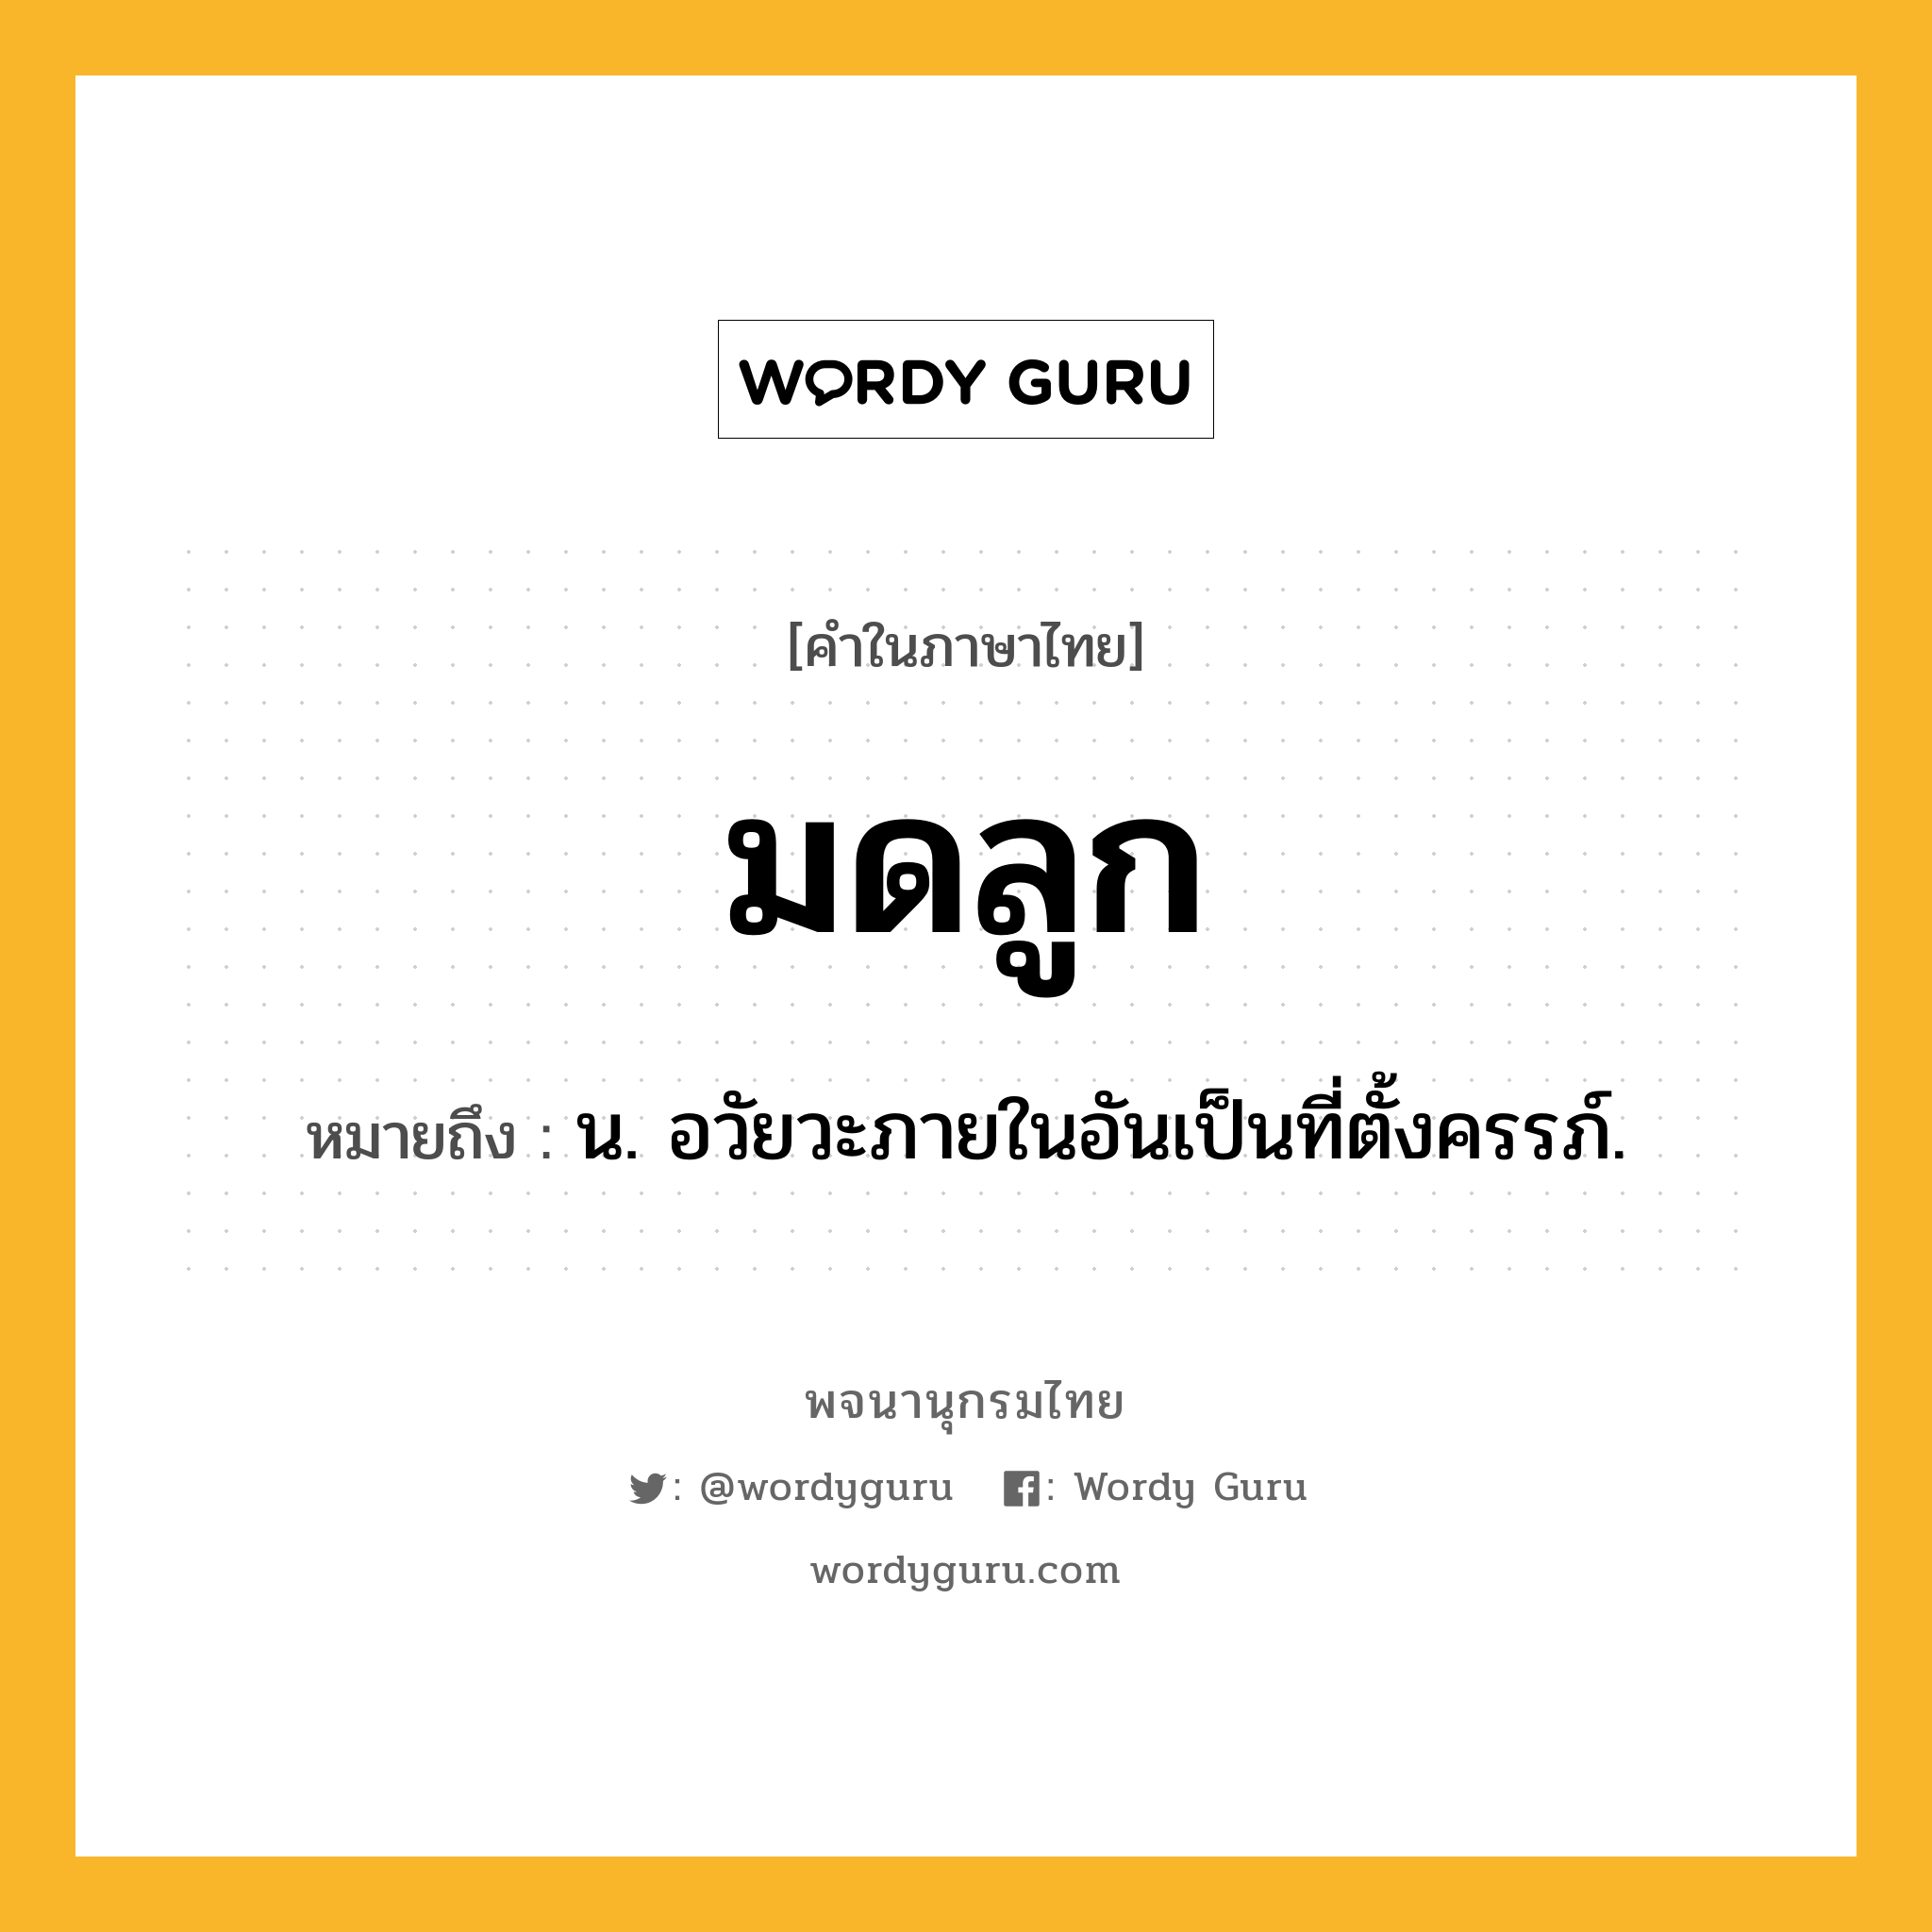 มดลูก ความหมาย หมายถึงอะไร?, คำในภาษาไทย มดลูก หมายถึง น. อวัยวะภายในอันเป็นที่ตั้งครรภ์.